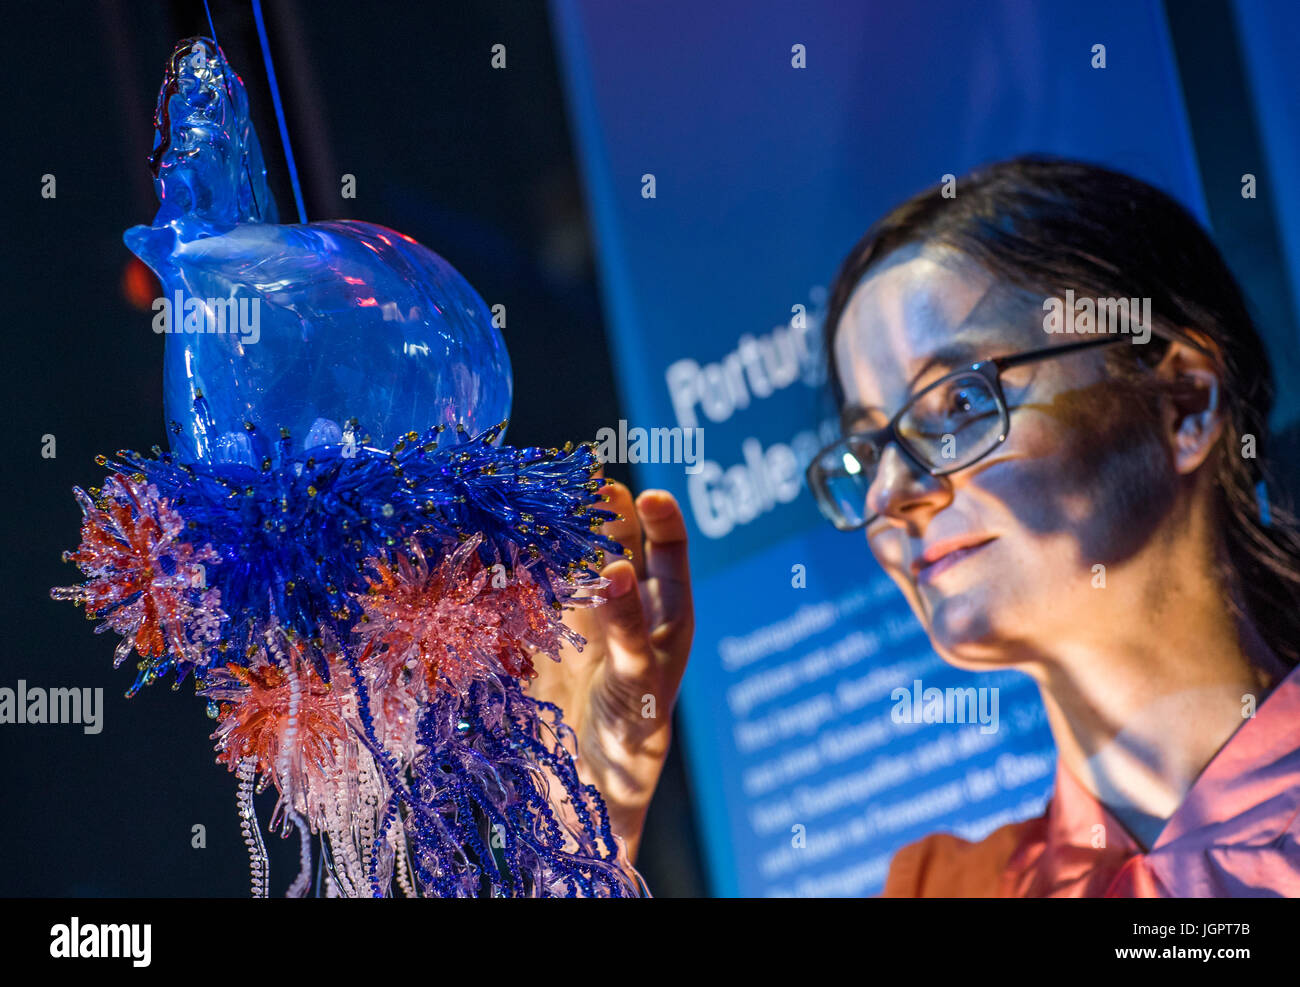 Artista Susan Liebold juntando la réplica de un cristal coloreado en el Ozeanum siphonophora en Stralsund, Alemania, 28 de junio de 2017. La réplica de la forma de vida oceánica, también conocido como el hombre portugués o'guerra consta de un total de 700 piezas. Siphonophorae son colonias de cientos de organismos individuales, nativo de los mares tropicales y son algunos de los organismos más venenosa en el océano. El cristal siphonophora puede ser admirado en la Ozeanum, el museo de ciencias naturales dedicado al mar pertenecientes a la Fundación Museo Oceanográfico alemán. Foto: Jens Büttner/dpa-Zentralbild/dpa Foto de stock